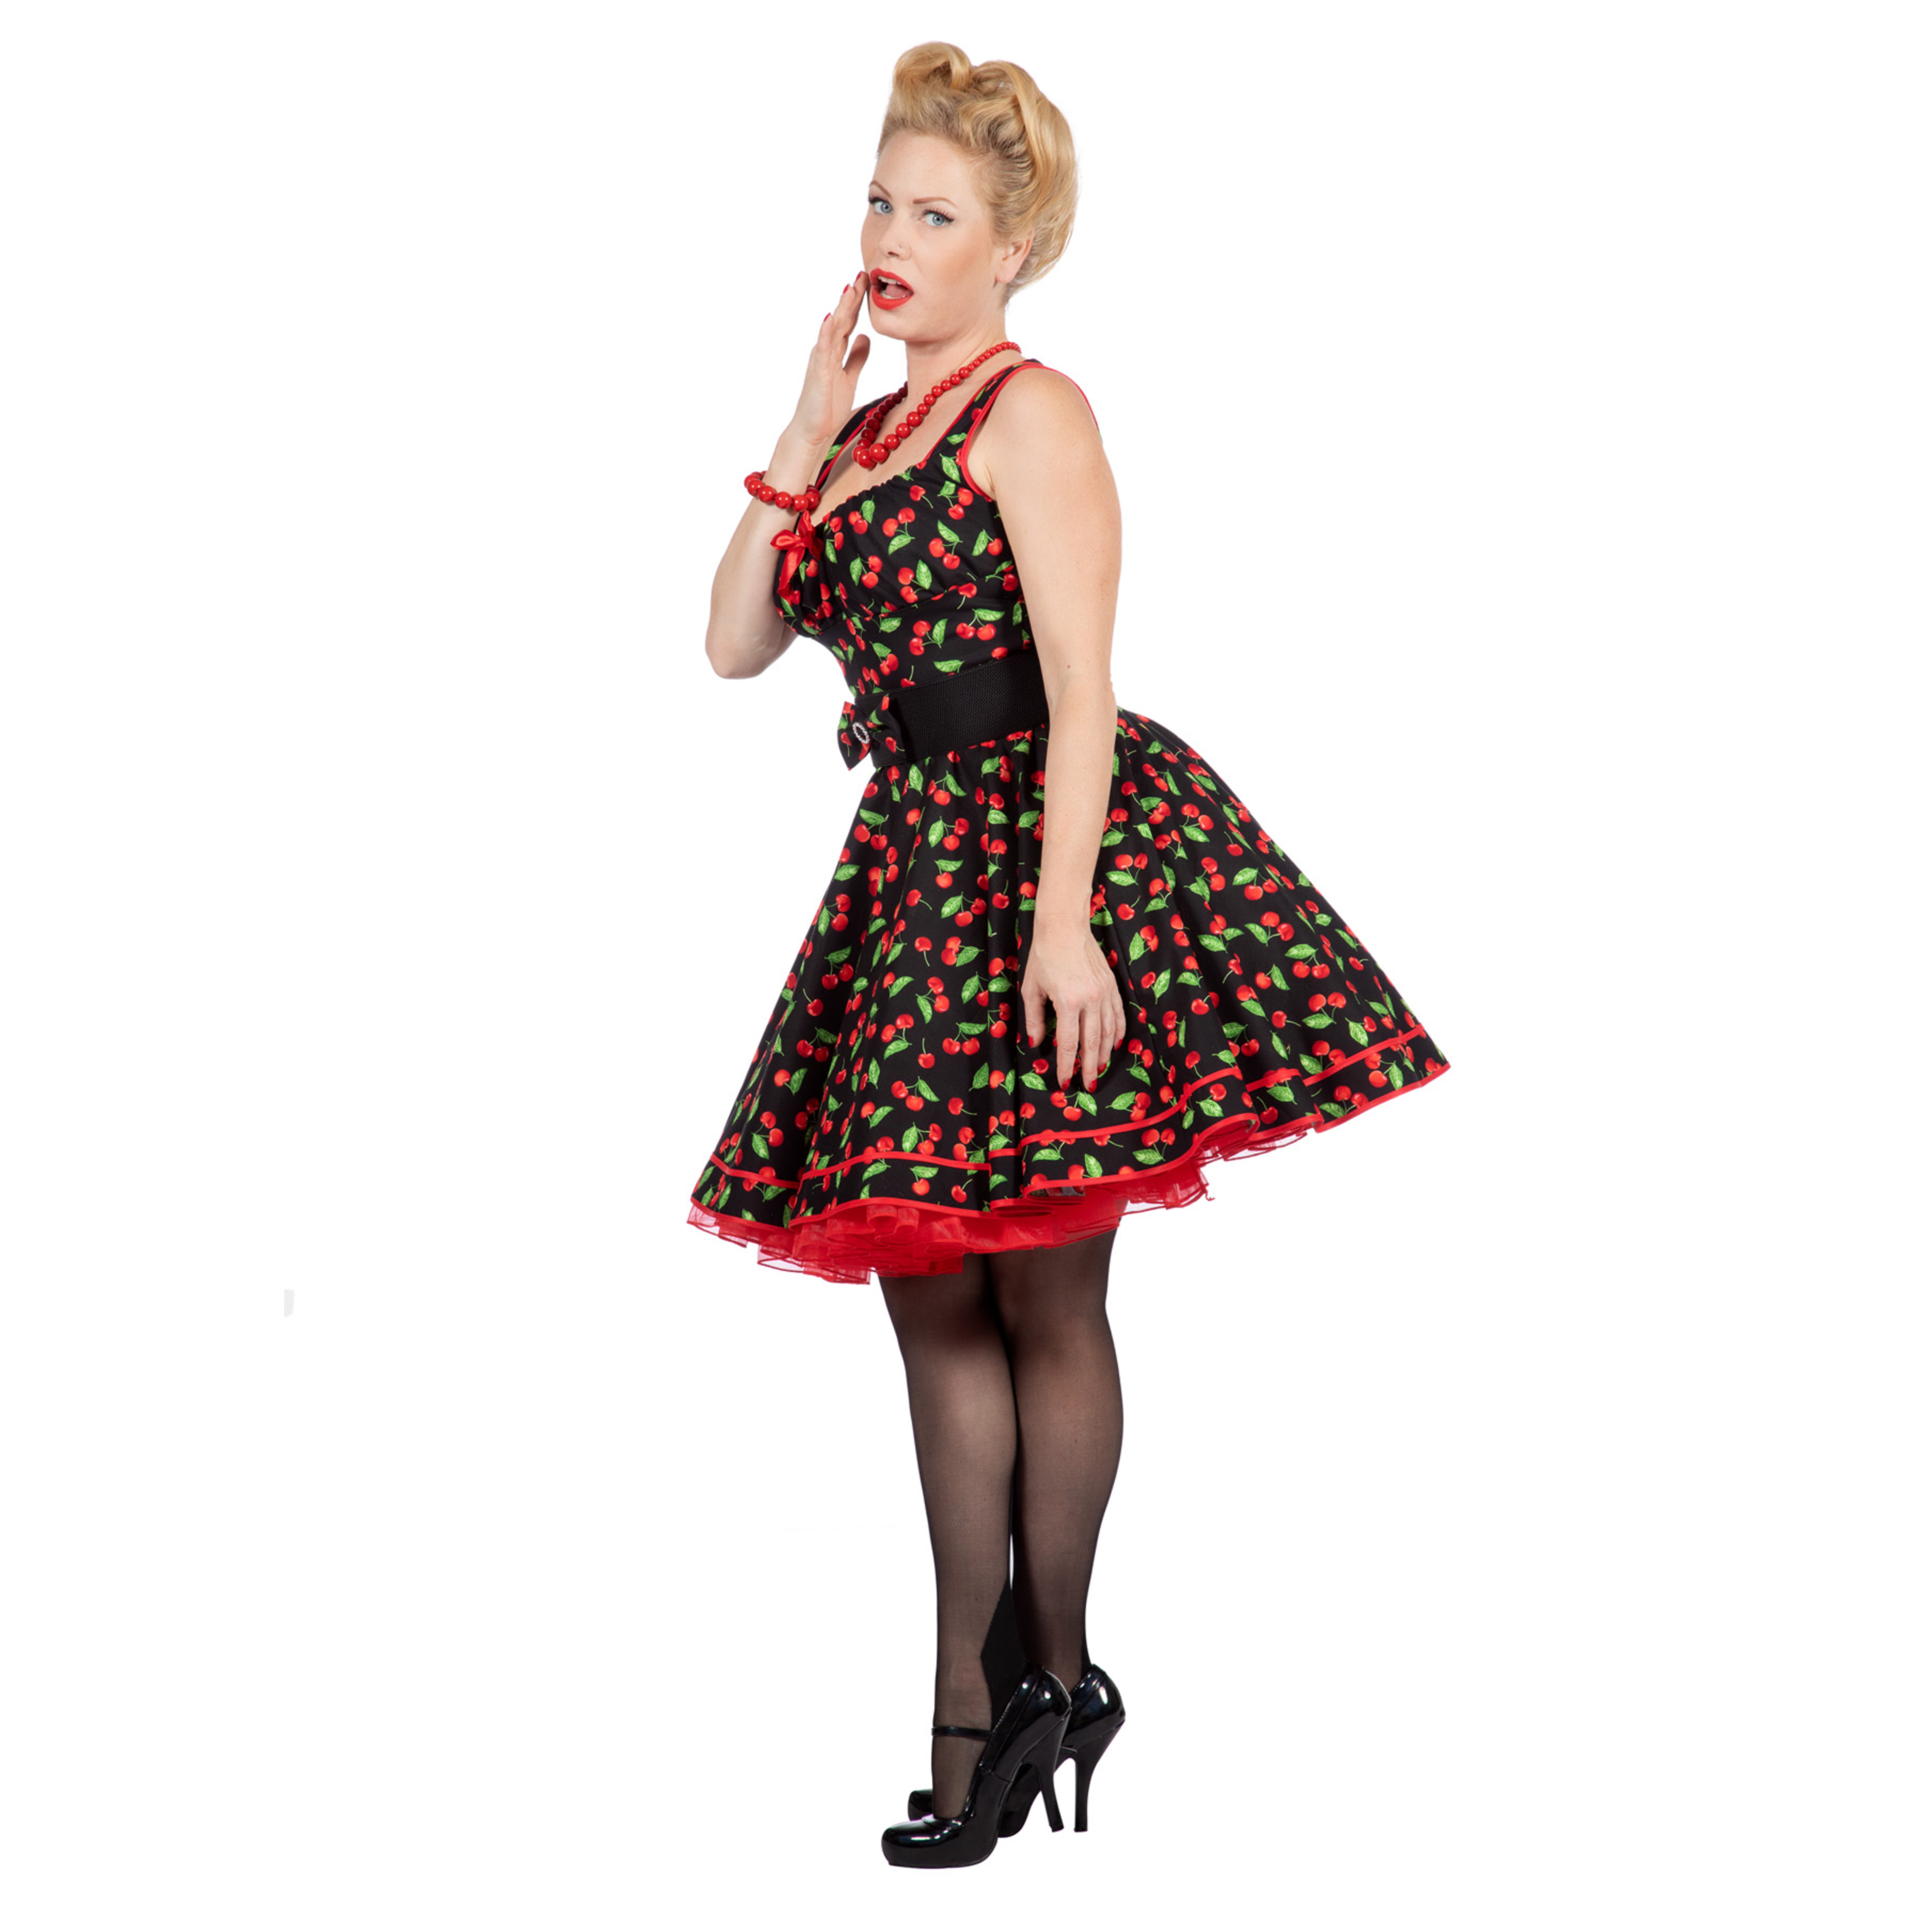 Premium-Line Damen-Kleid Rockabilly Cherry, Gr. 36 Bild 2